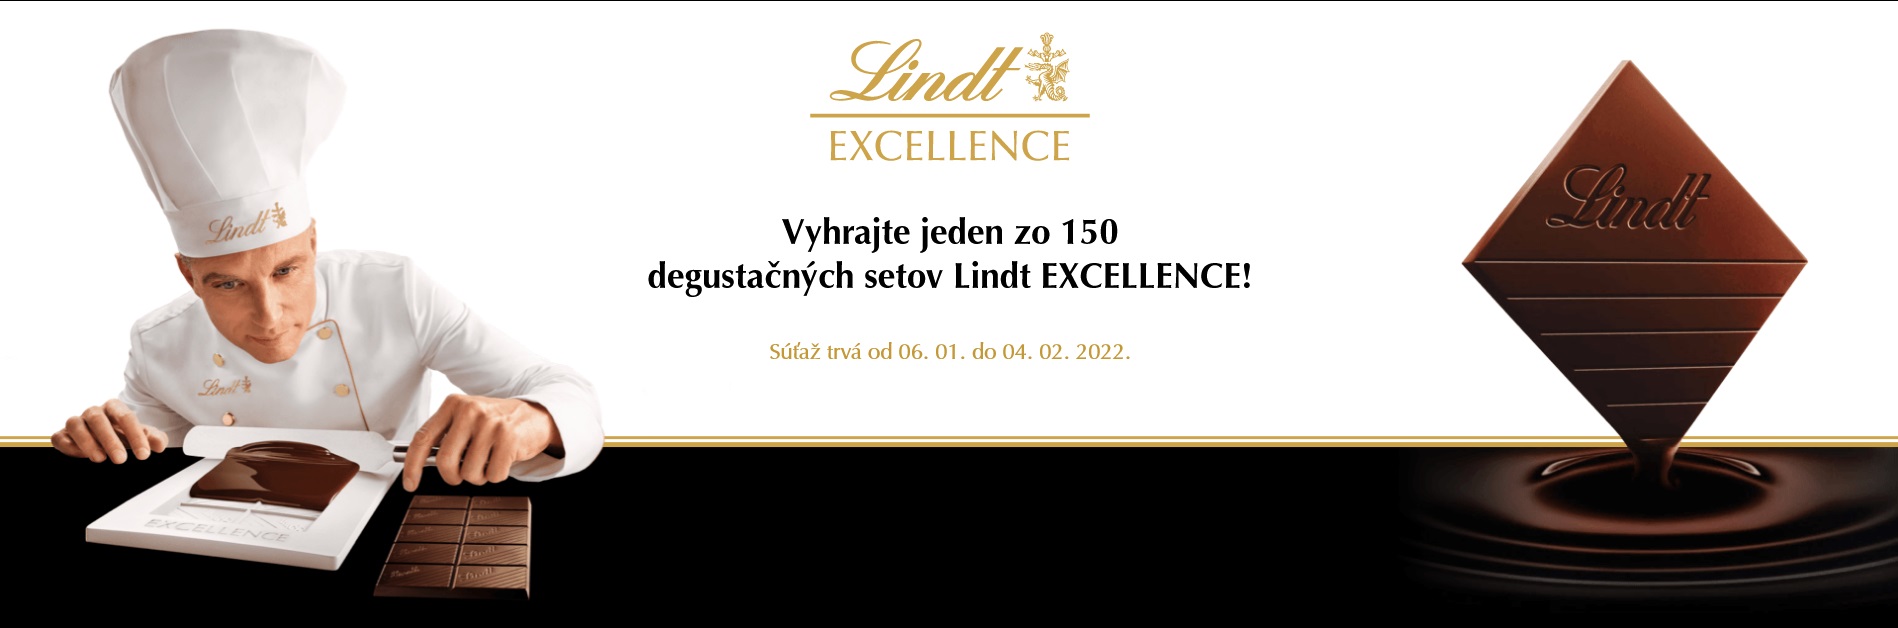 Zahrajte si o degustačný set Lindt Excellence